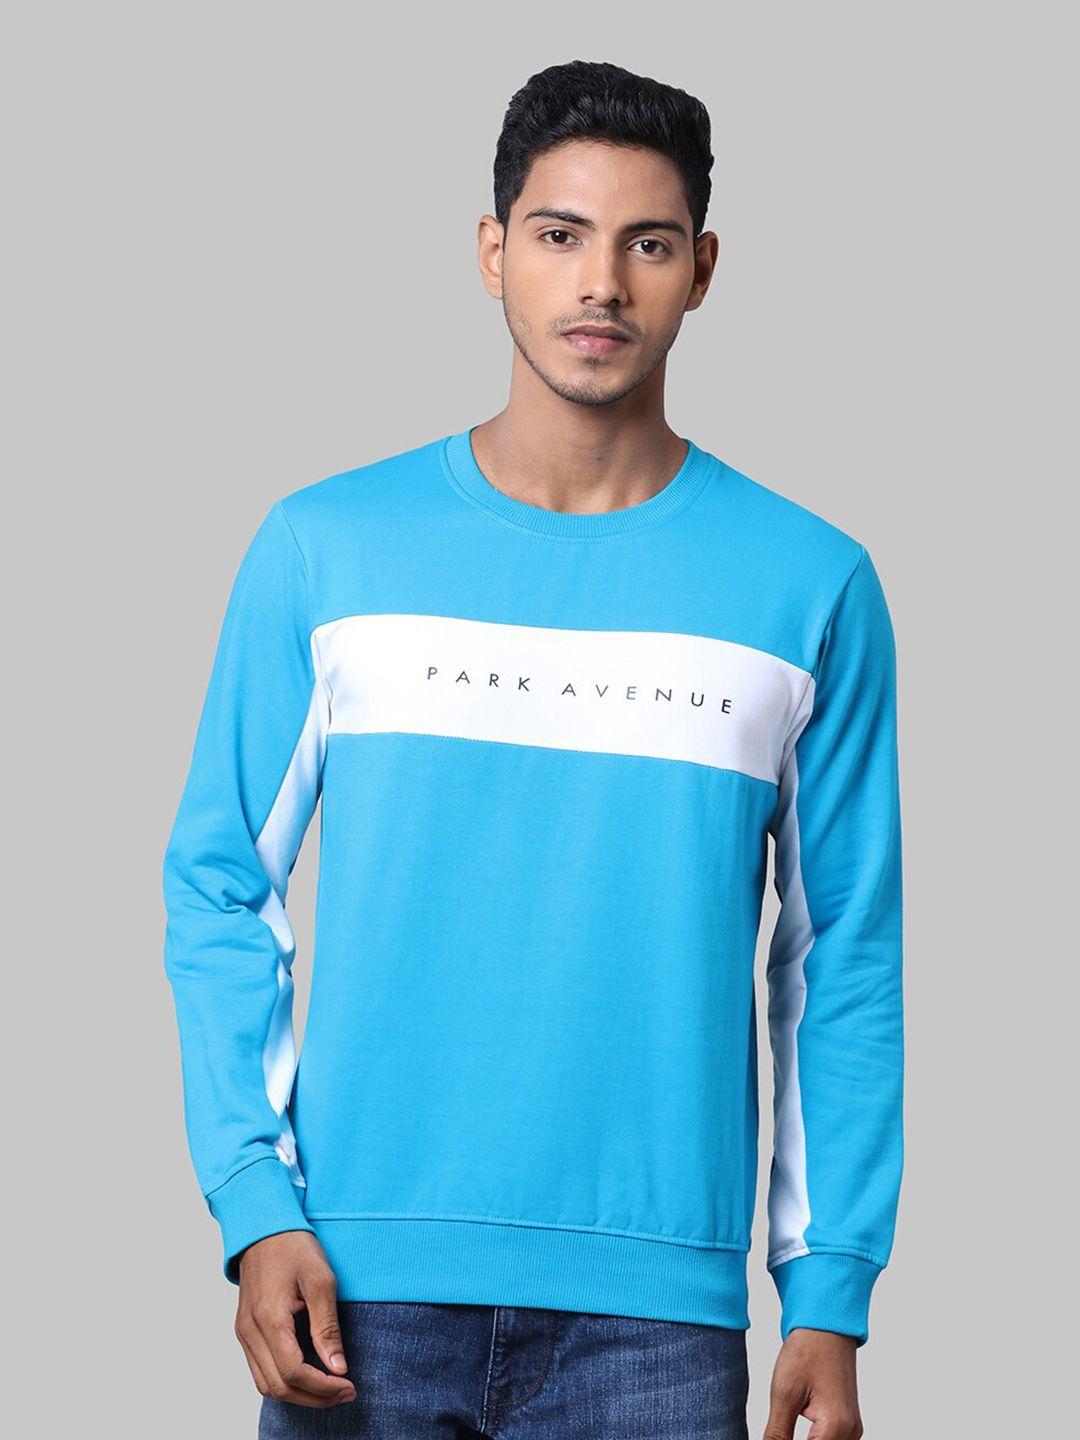 park-avenue-men-blue-&-white-printed-cotton-sweatshirt